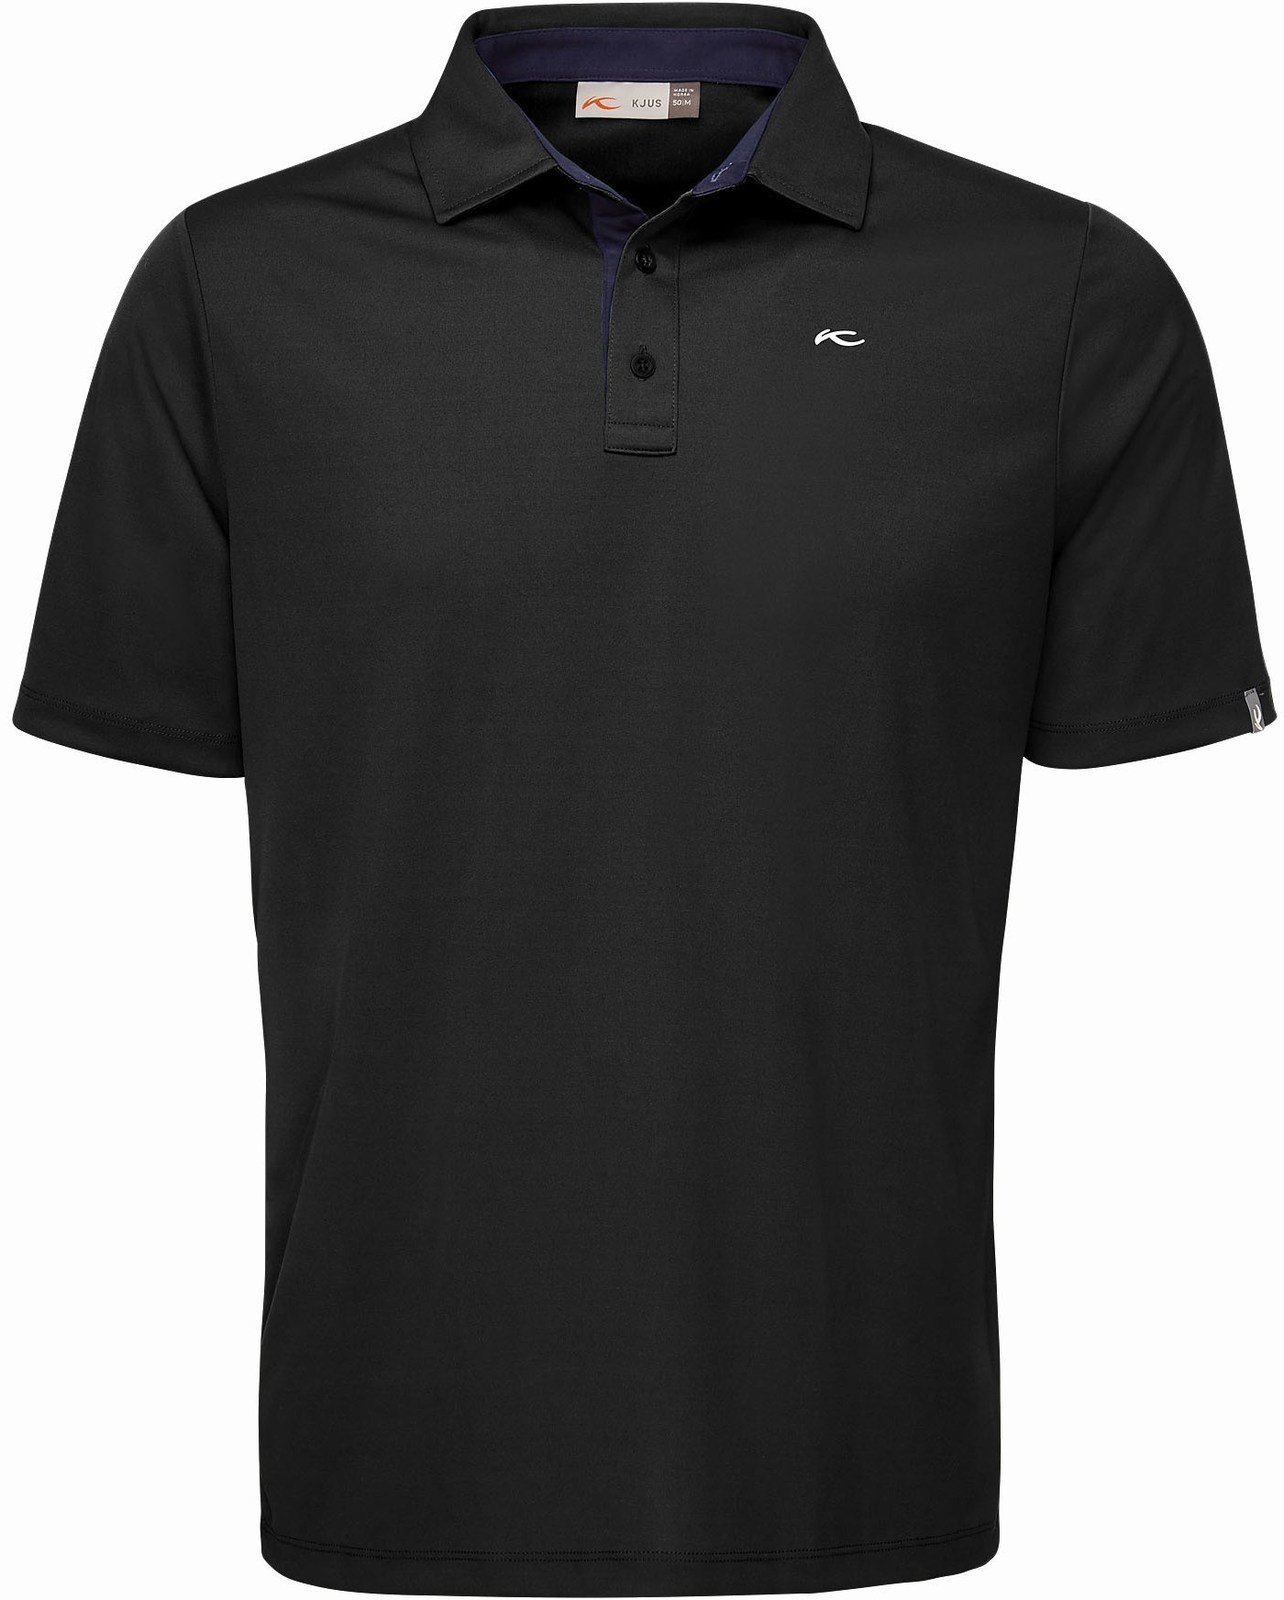 Polo Shirt Kjus Silas Mens Polo Shirt Black/Atlanta Blue 50